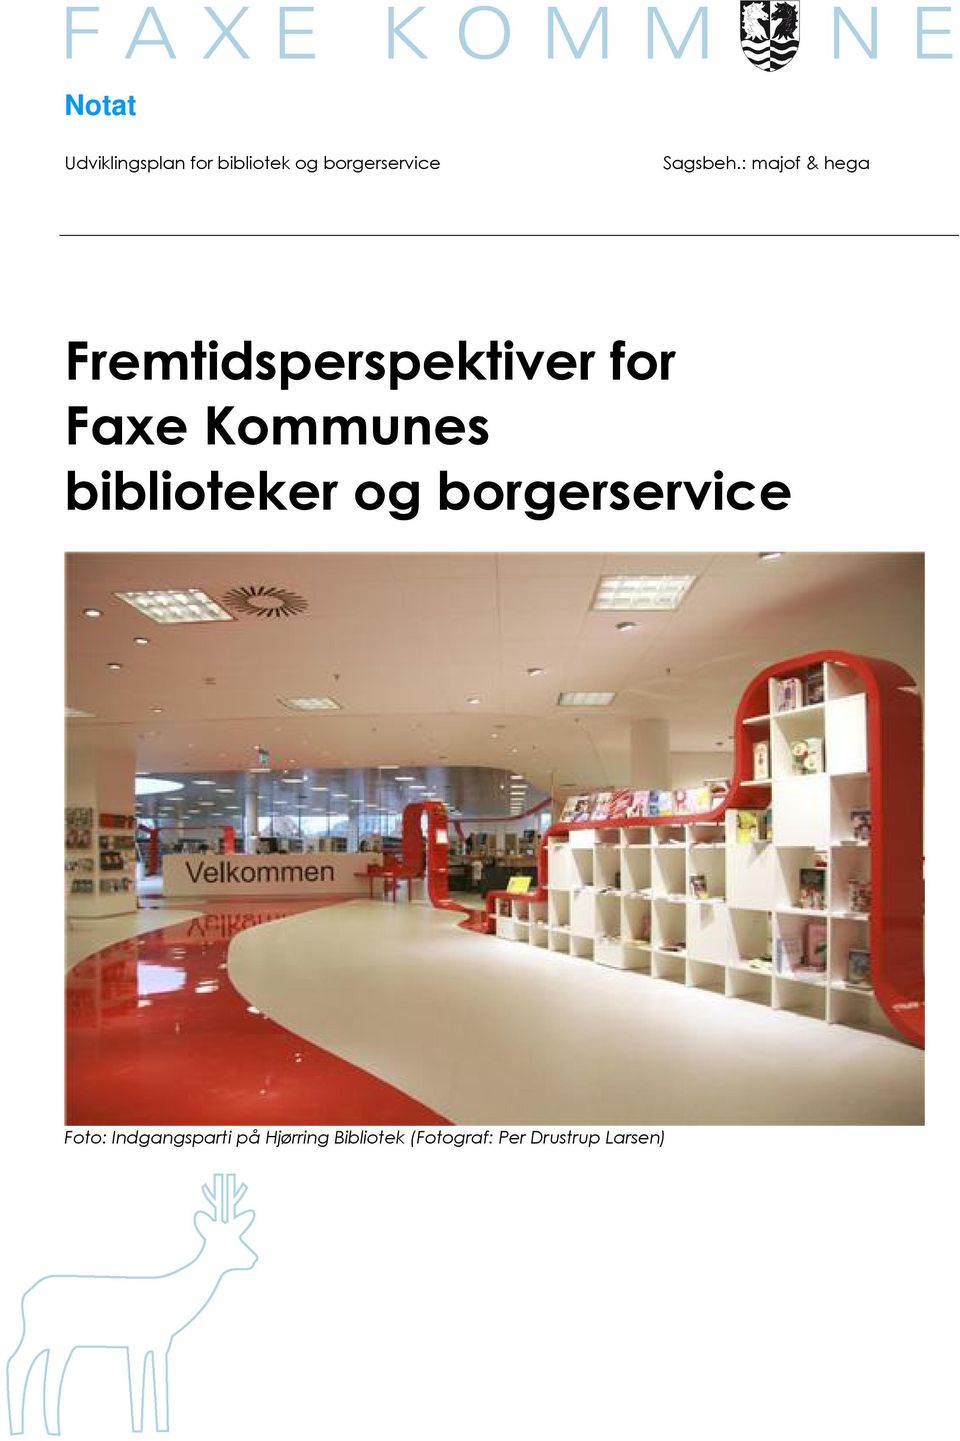 : majof & hega Fremtidsperspektiver for Faxe Kommunes